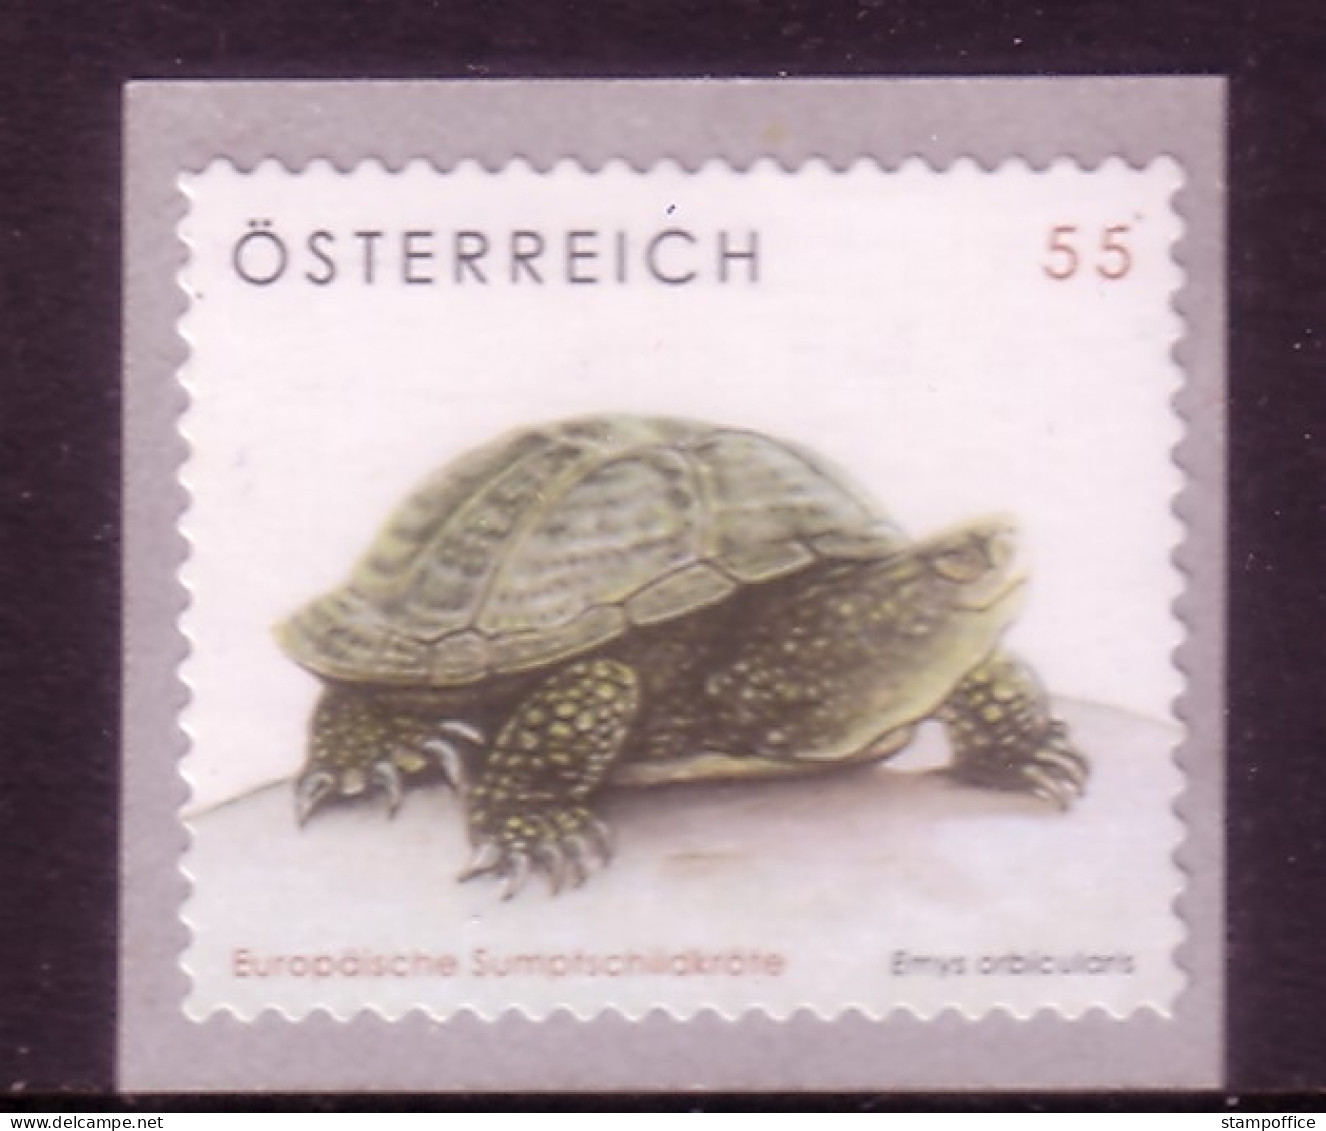 ÖSTERREICH MI-NR. 2624 POSTFRISCH(MINT) SCHILDKRÖTE 2006 - Schildpadden